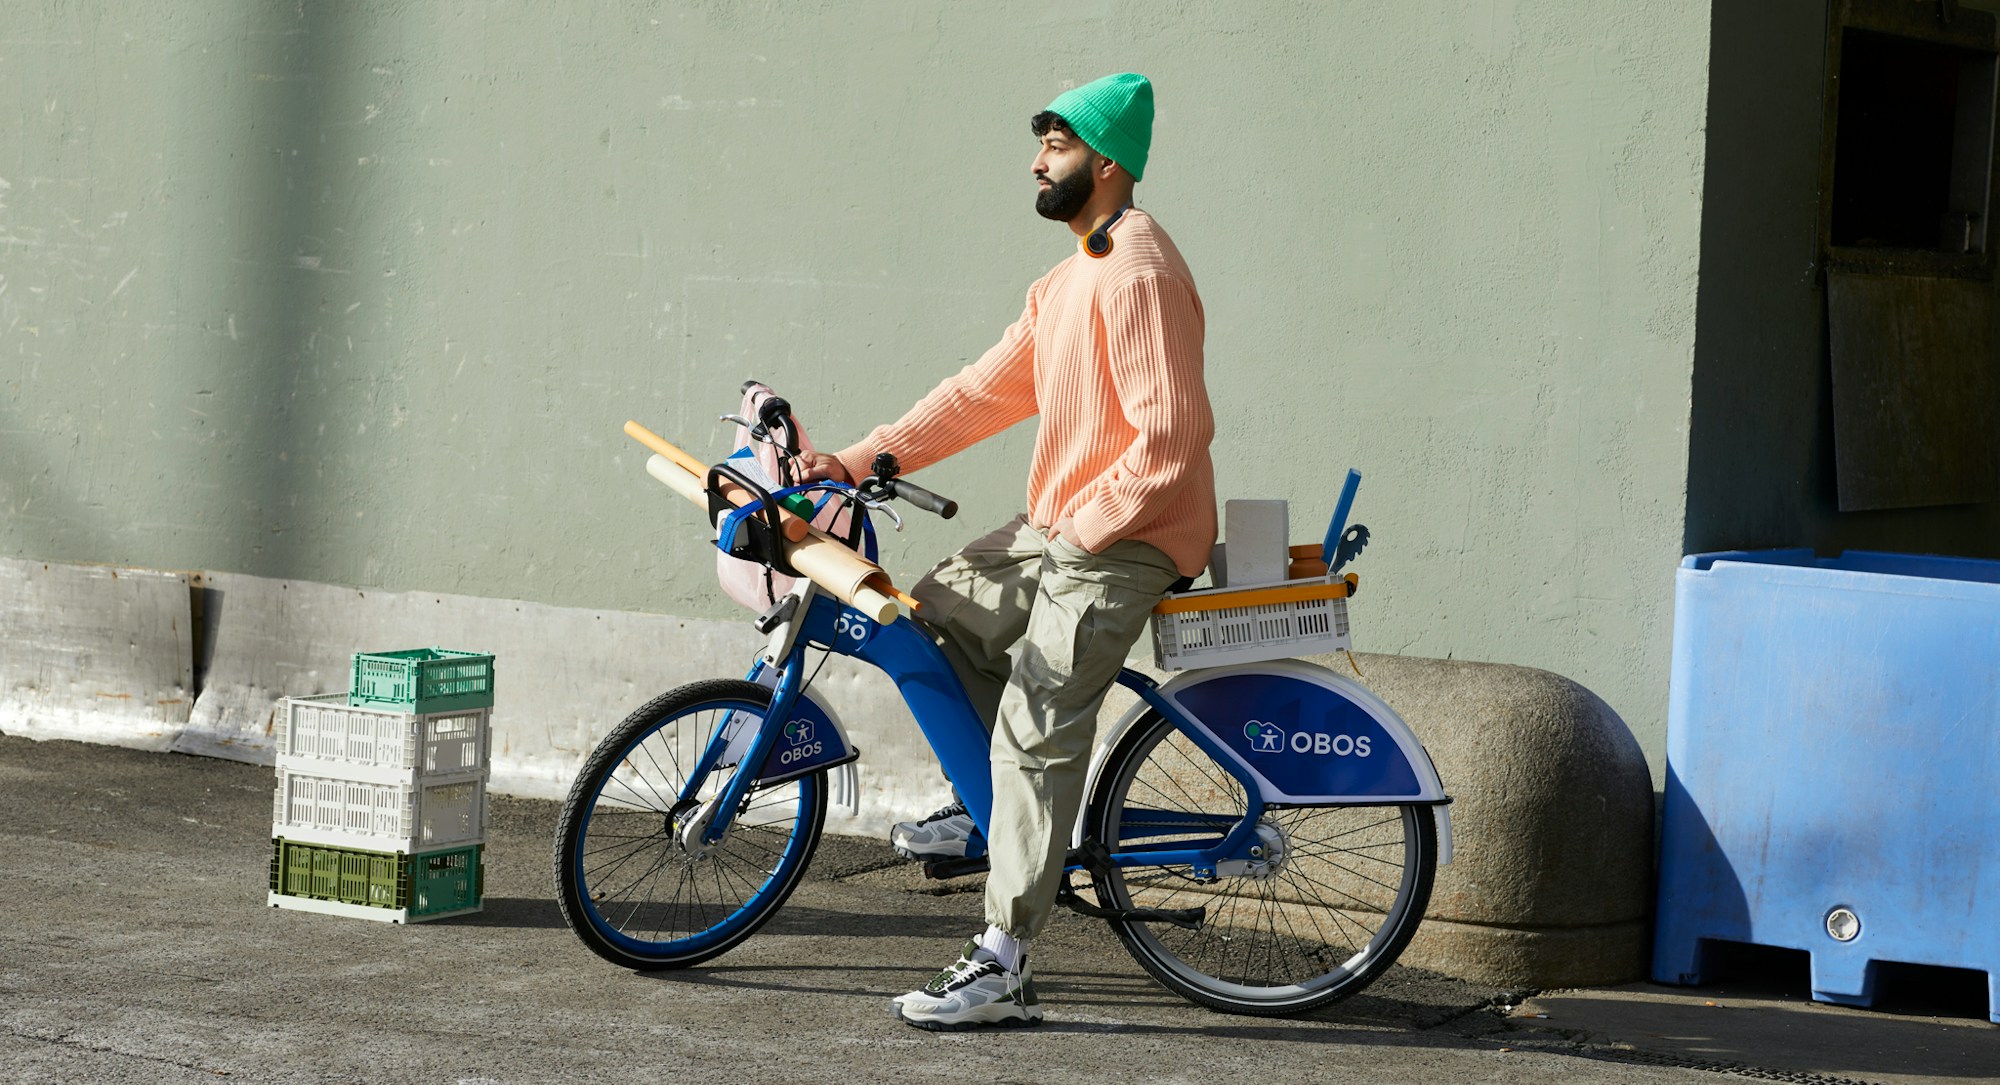 En mann på en bysykkel med fargerike klær. Sykkelen er lastet med ulike interiørting og ruller med papir.